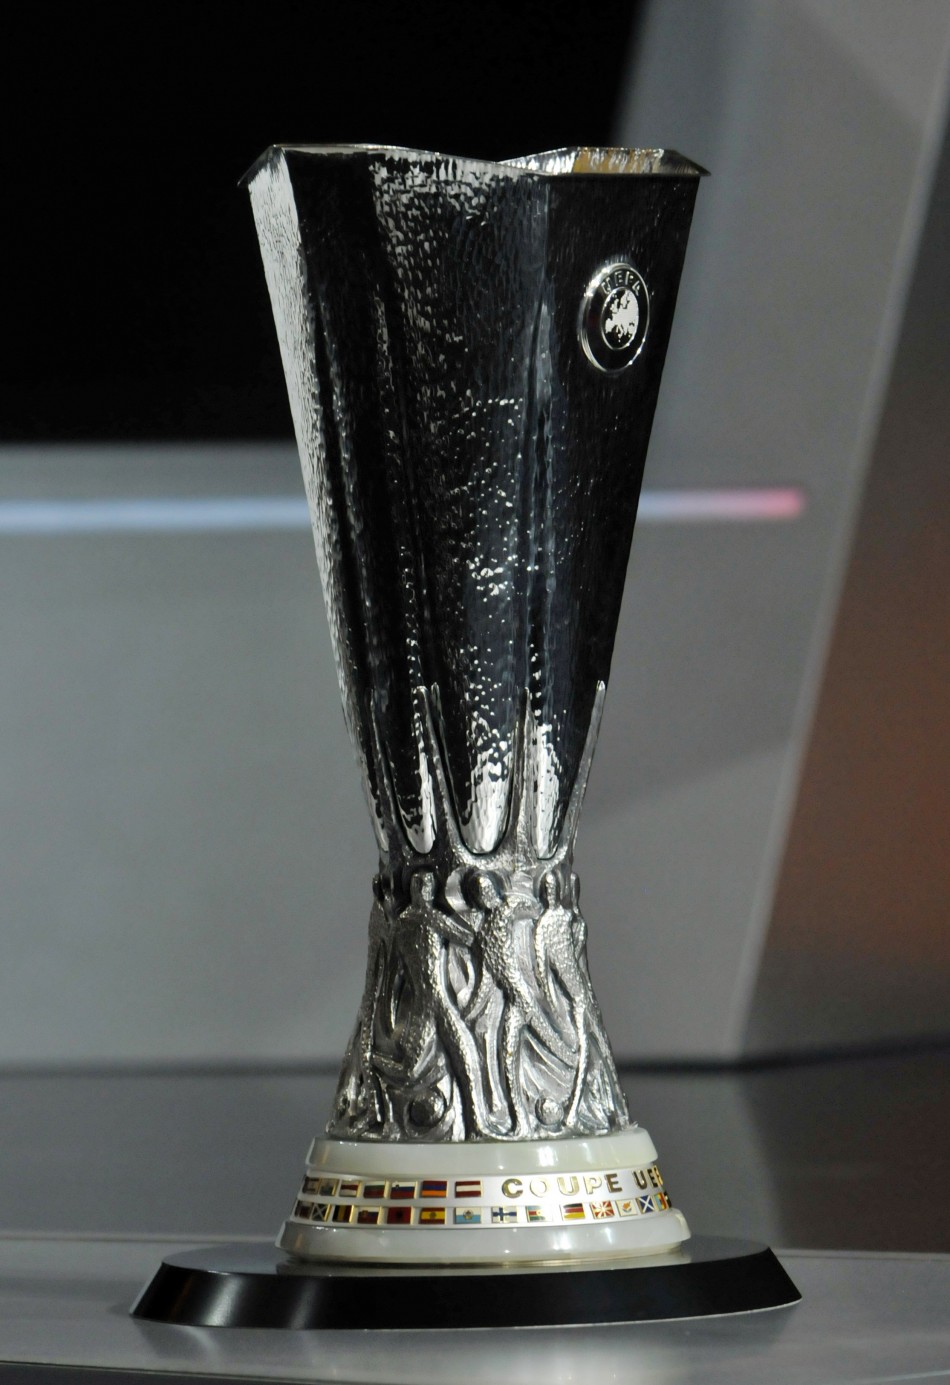 UEFA Europa League - UEFAcom